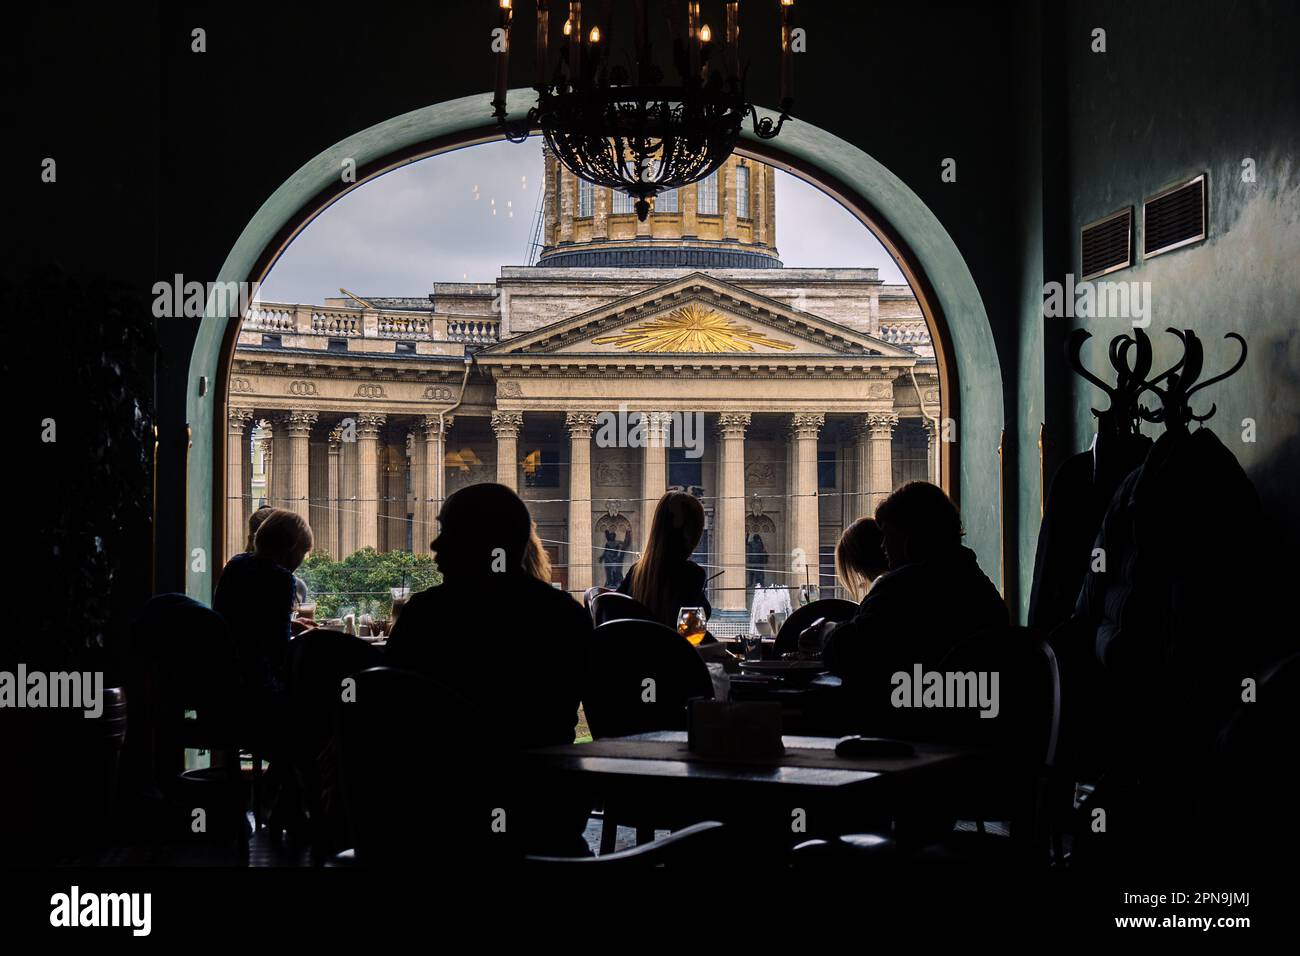 Vista della Cattedrale di Kazan dal Singer Cafe attraverso la finestra. Silhouette di persone sedute ai tavoli nella vecchia Singer House a San Pietroburgo, Russia. Foto di alta qualità Foto Stock